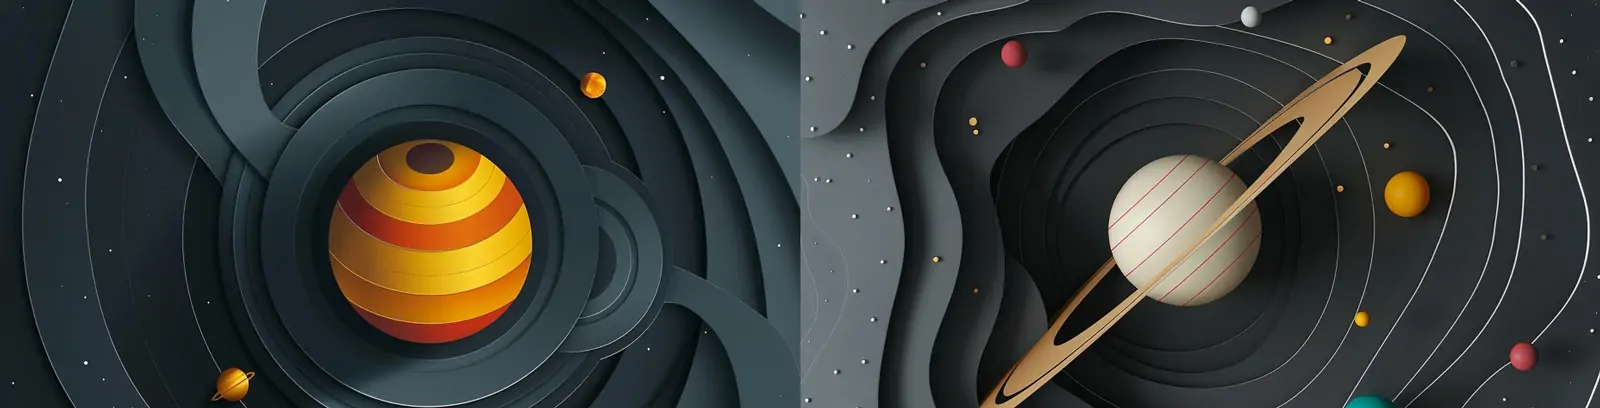 宇宙太空星球太阳系行星土星立体光环剪纸风格空间海报midjourney关键词咒语